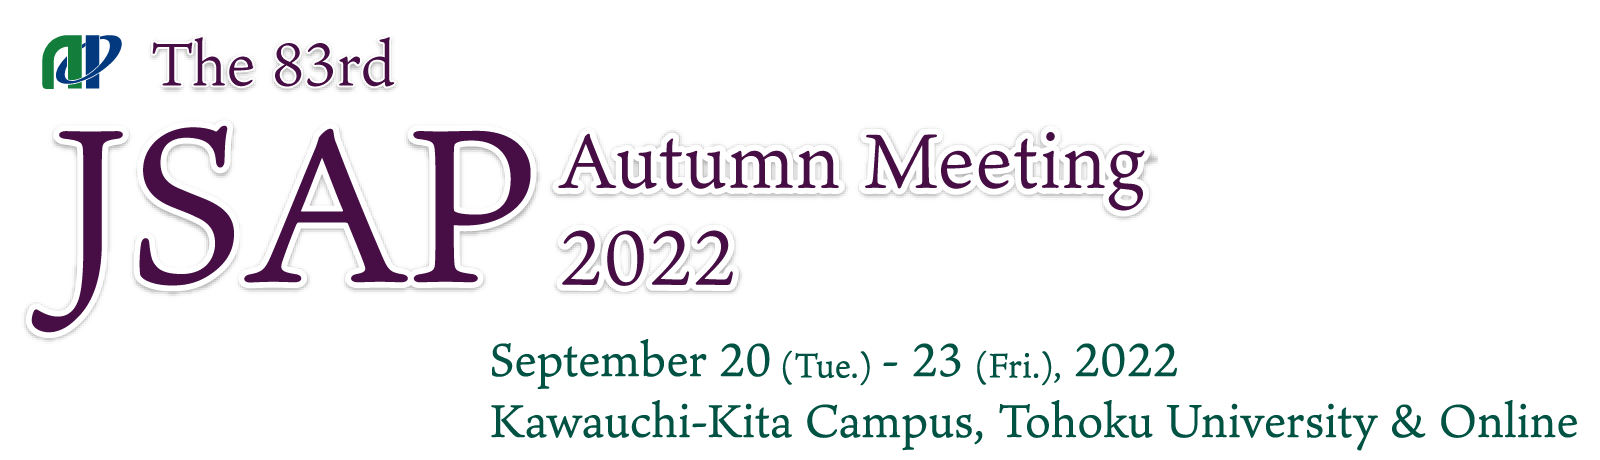 The 83rd JSAP Autumn Meeting 2022